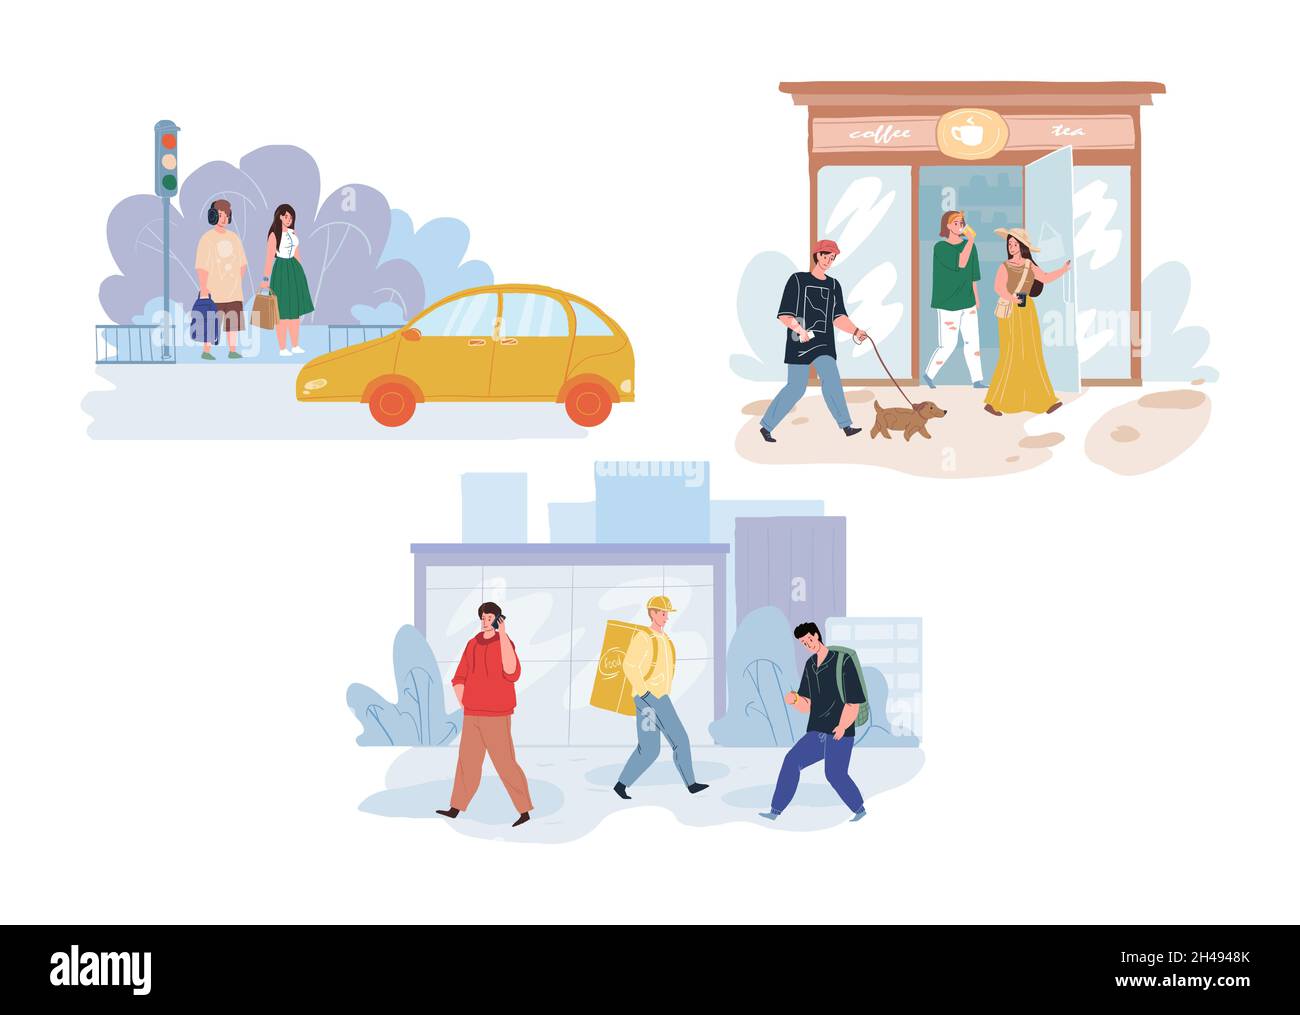 Personaggi cartoni animati in scene di vita cittadina, concetto di illustrazione vettoriale Illustrazione Vettoriale